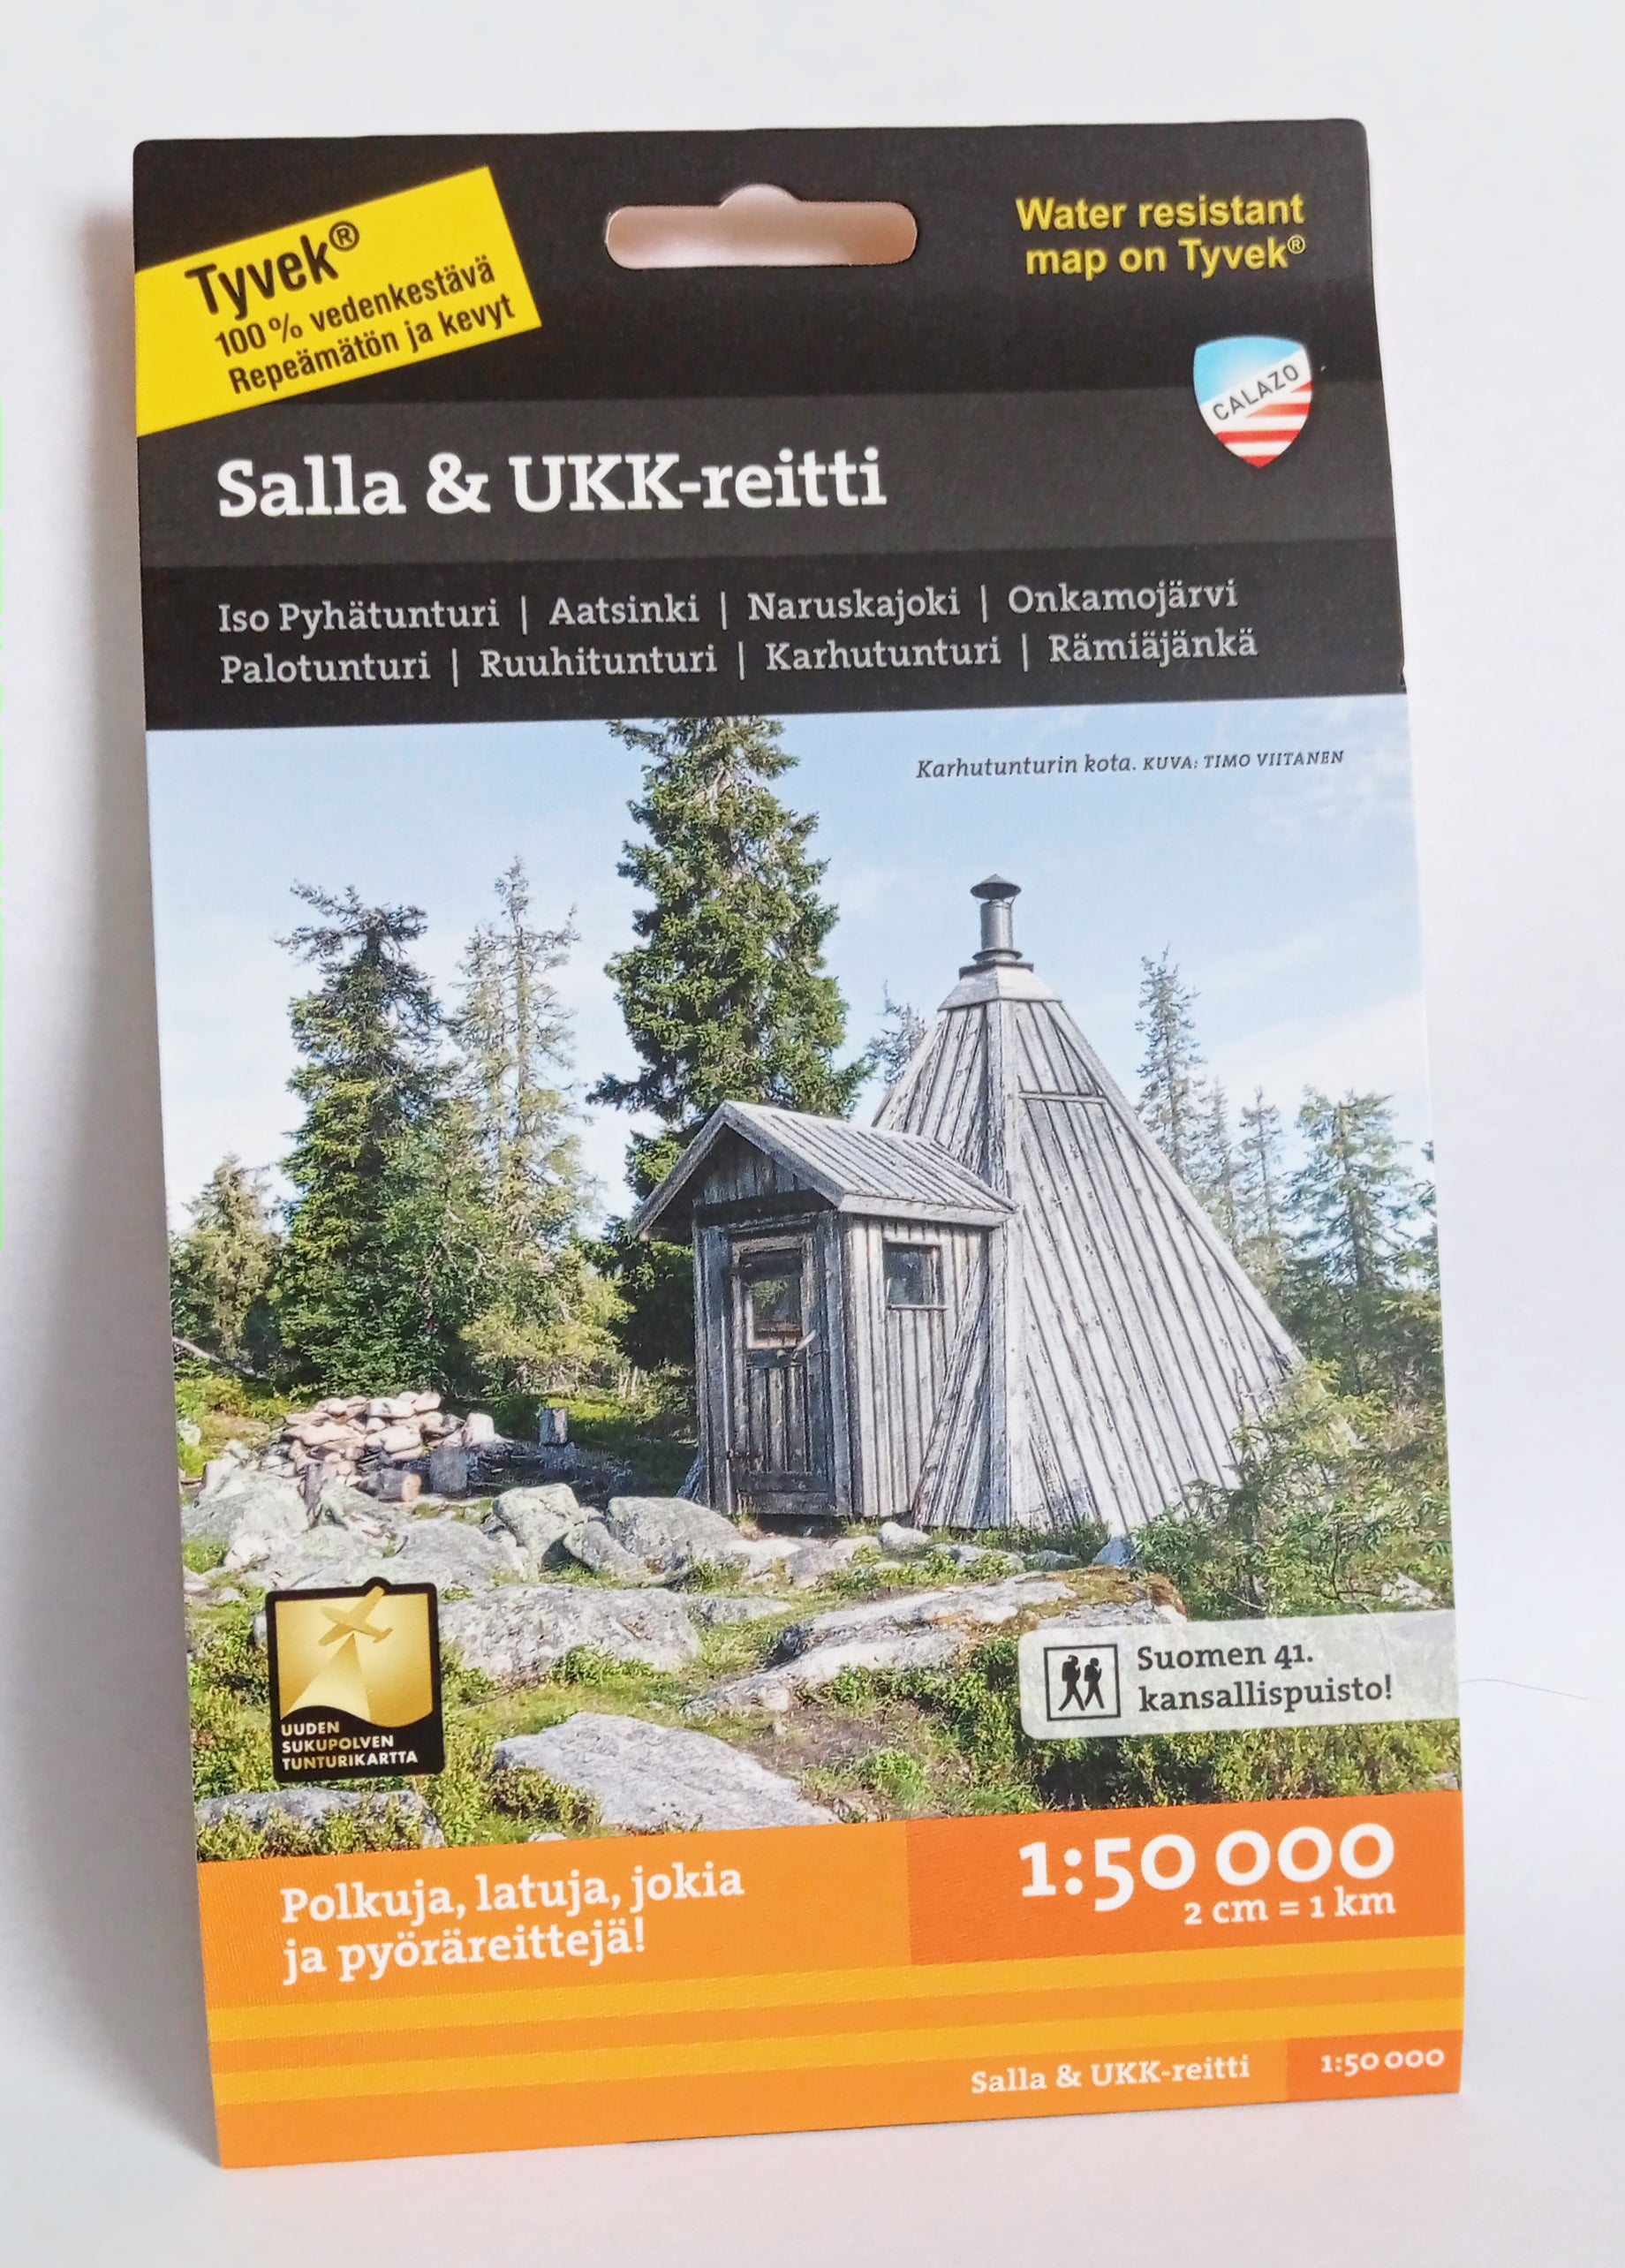 Salla & UKK-reitti 1:50 000 kartta – Salla -in the middle of nowhere